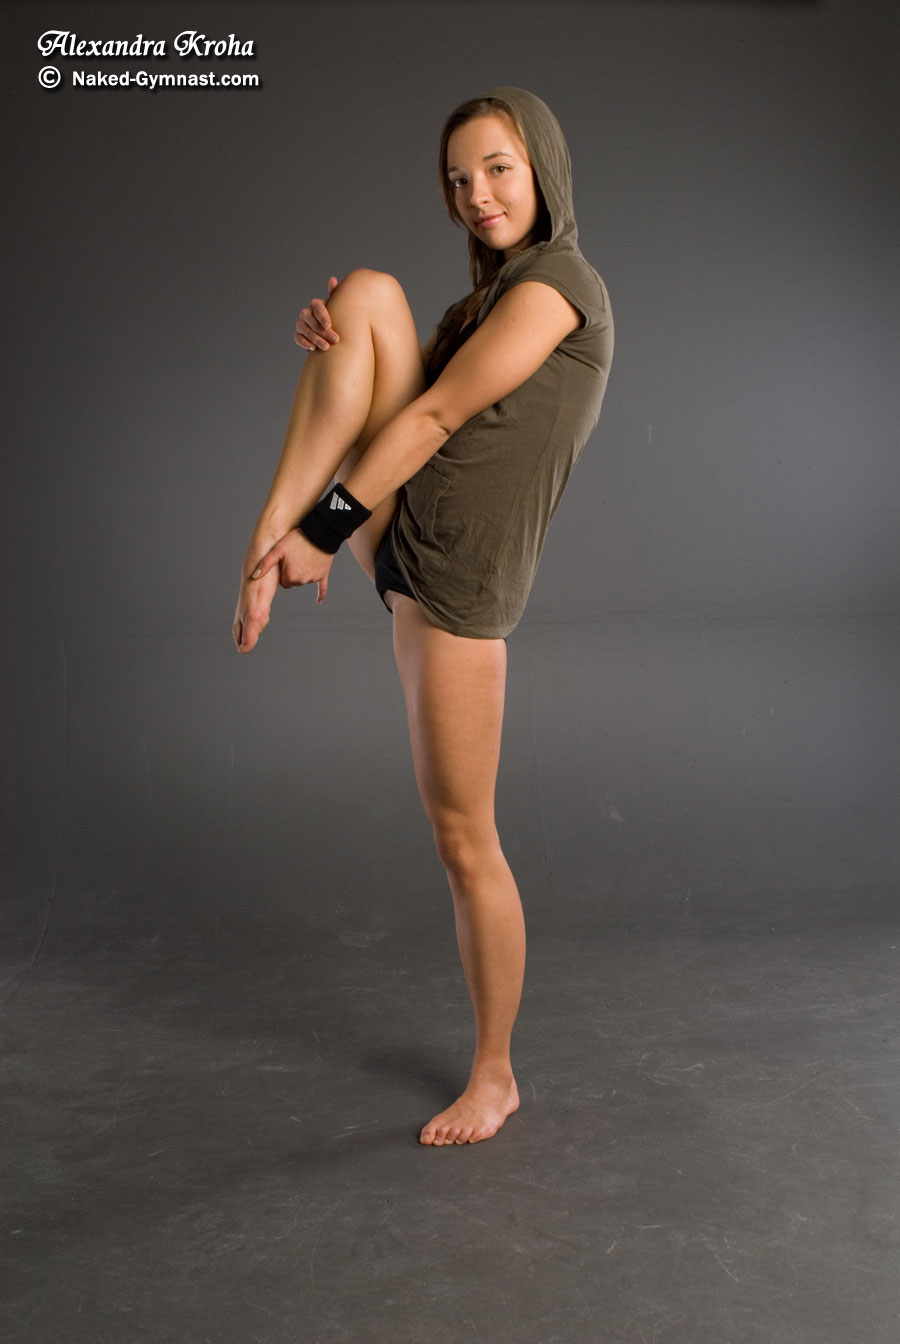 alexandra-kroha-young-flexible-girl-pussy-naked-gymnast-02